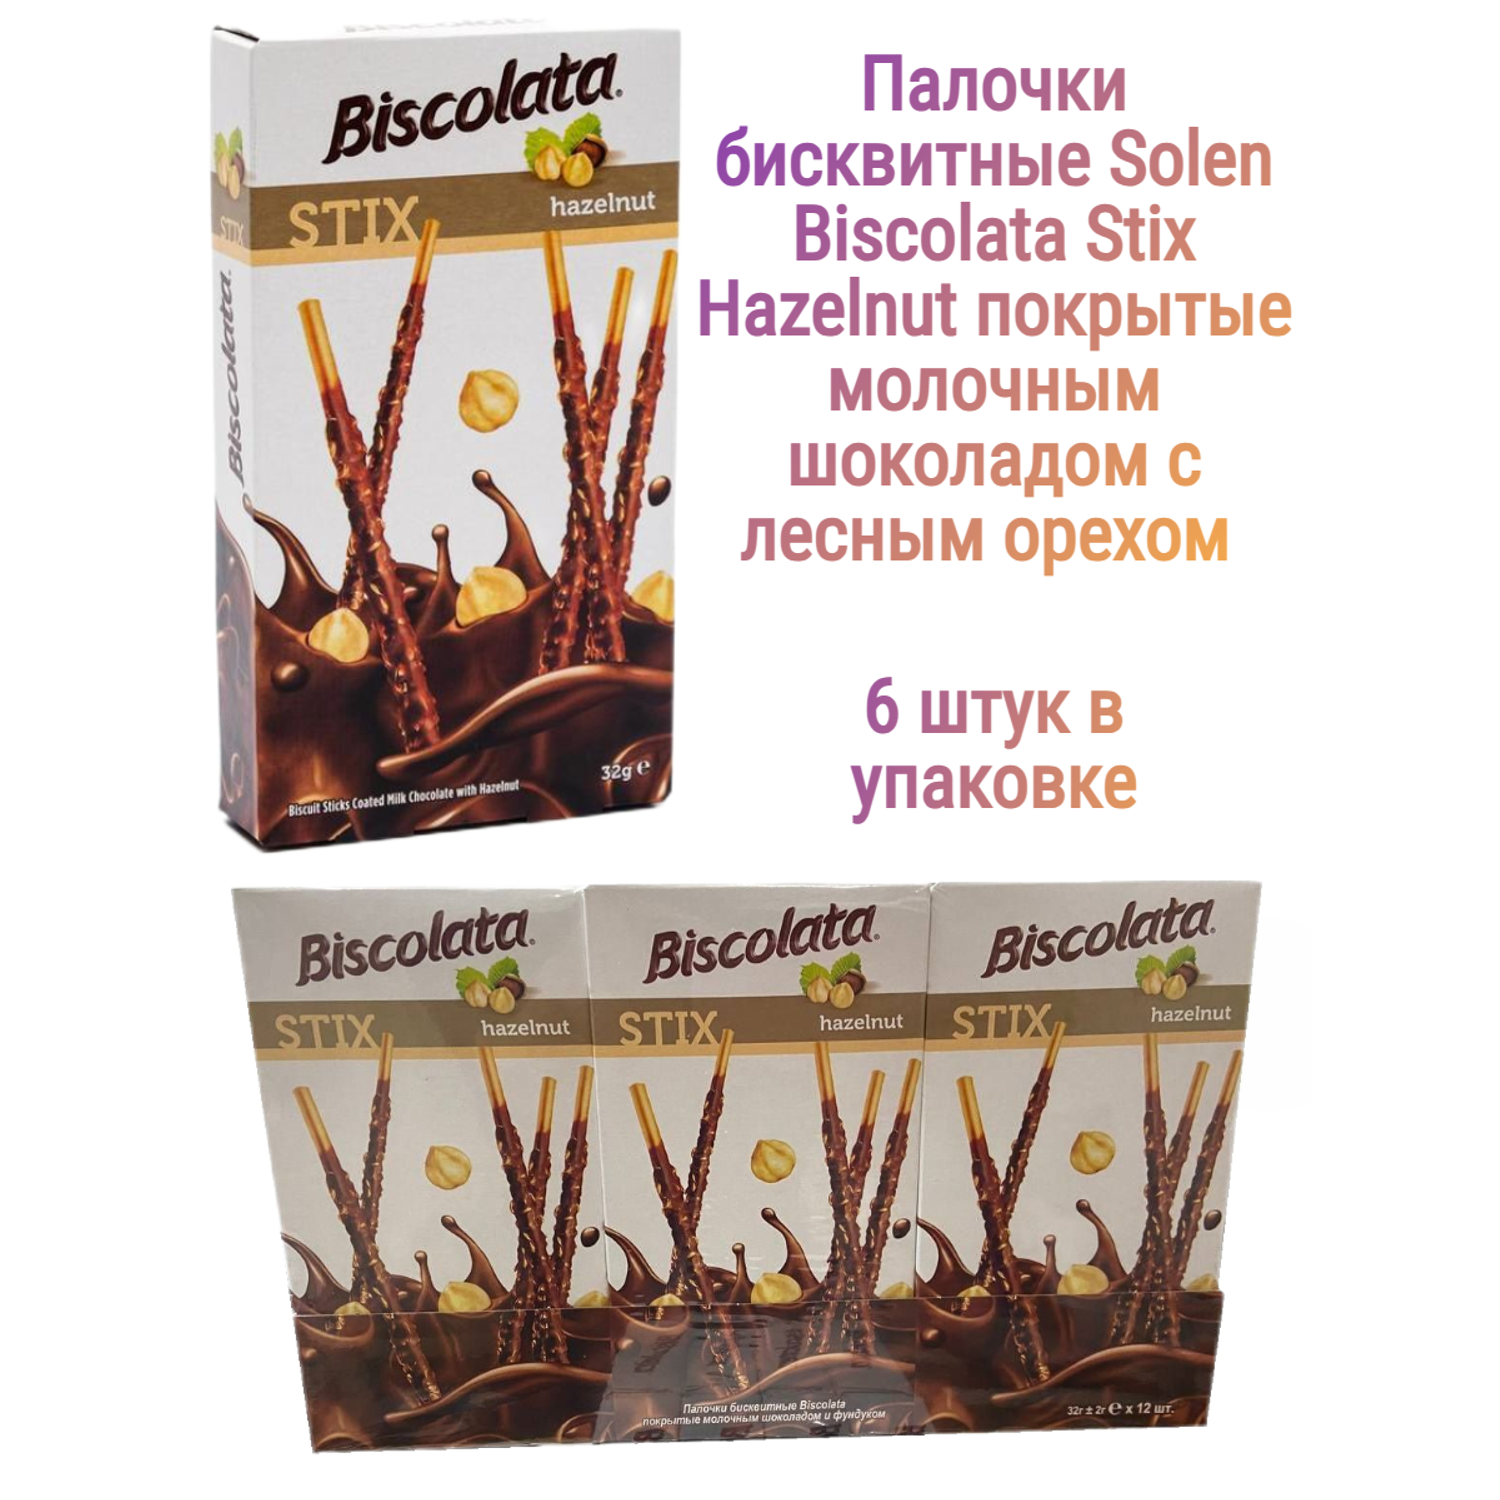 Палочки бисквитные Solen Biscolata Stix Hazelnut покрытые молочным шоколадом с лесным орехом 6 шт. - фото 1